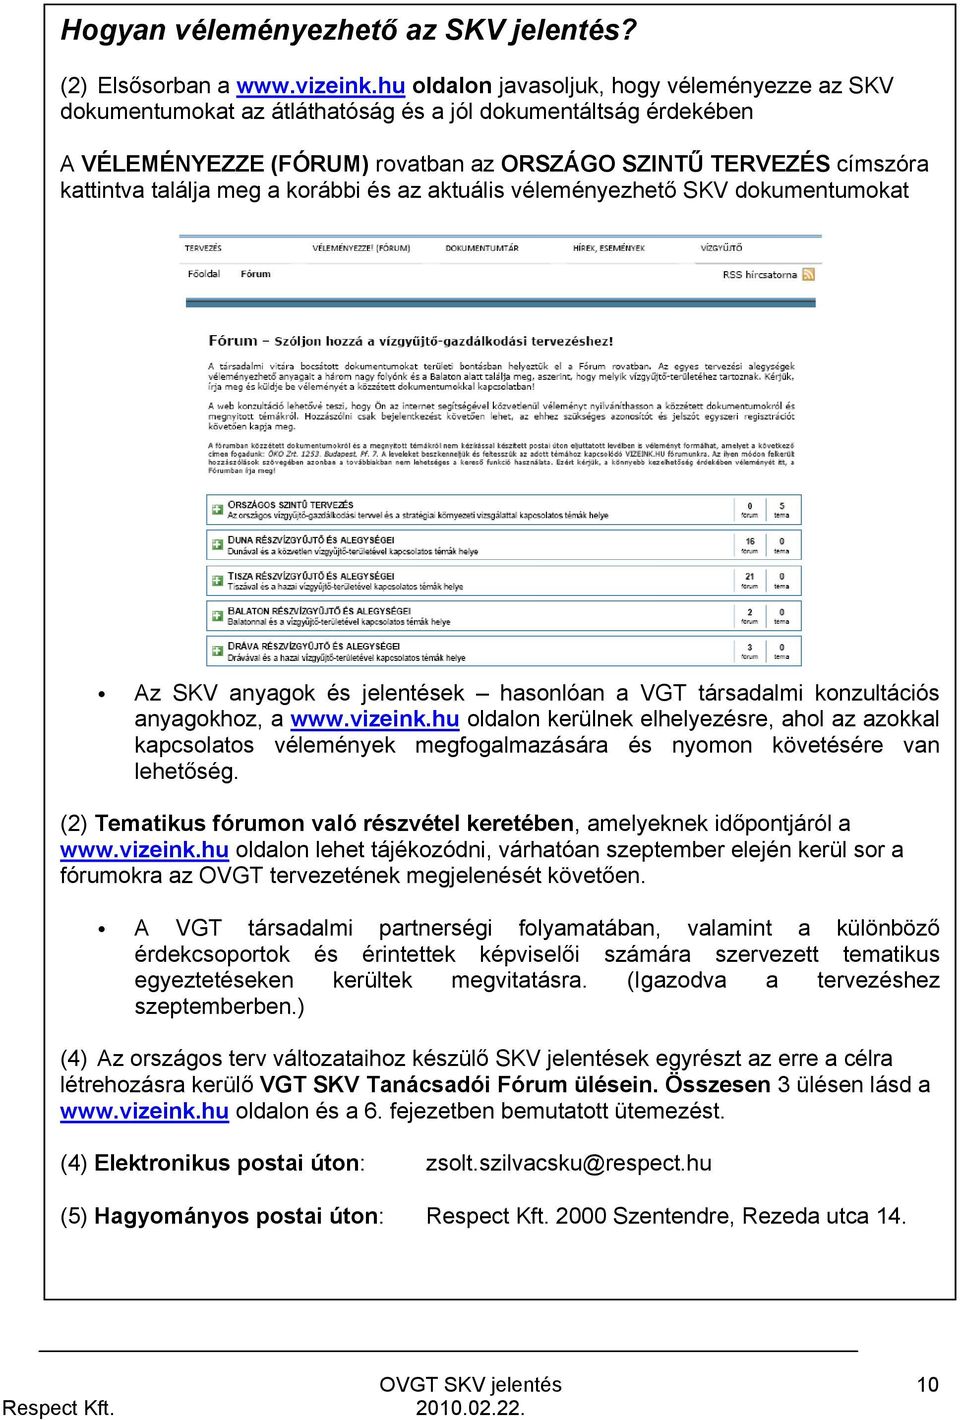 meg a korábbi és az aktuális véleményezhető SKV dokumentumokat Az SKV anyagok és jelentések hasonlóan a VGT társadalmi konzultációs anyagokhoz, a www.vizeink.